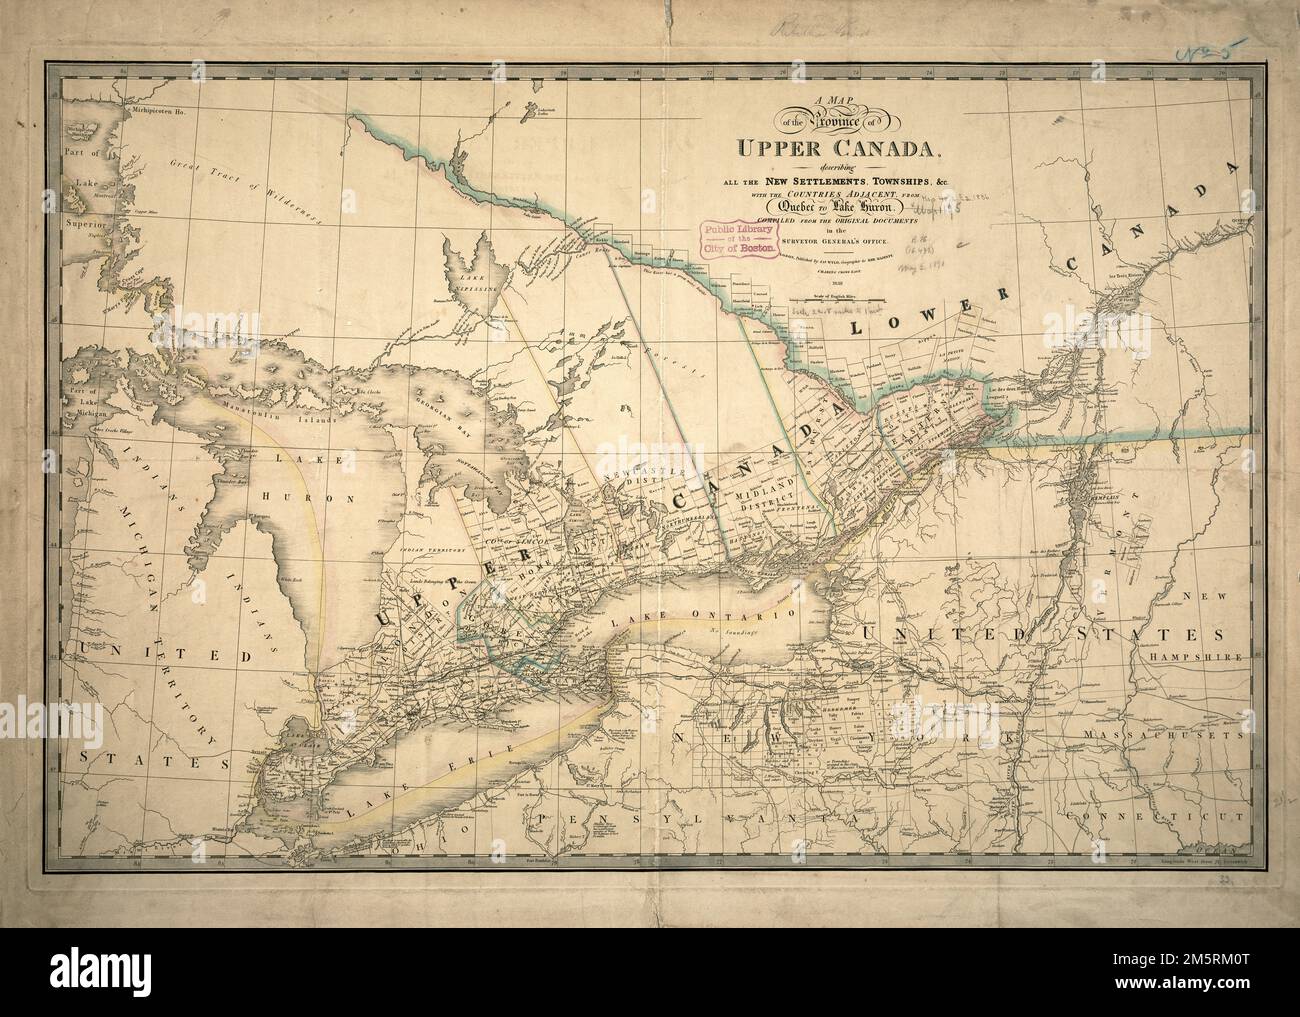 Eine Karte der Provinz Upper Canada, die alle neuen Siedlungen, Townships und cc beschreibt. Mit den Nachbarländern, von Quebec bis zum Huronsee: Zusammengestellt aus den Originaldokumenten im Büro des Generalstaatsanwalts. Nach der amerikanischen Revolution verließen viele britische Loyalisten ihre Häuser in den dreizehn Kolonien und zogen nach Kanada, wo sie sich in der Region nördlich der Seen Erie und Ontario und südlich des Ottawa River niederließen. 1791 wurde die Provinz Quebec in Ober- und Unterkanada unterteilt, wie auf dieser Karte von 1836 dargestellt. Niederkanada blieb ein Gebiet der französischen Kultur und Siedlung, aber Oberes C. Stockfoto